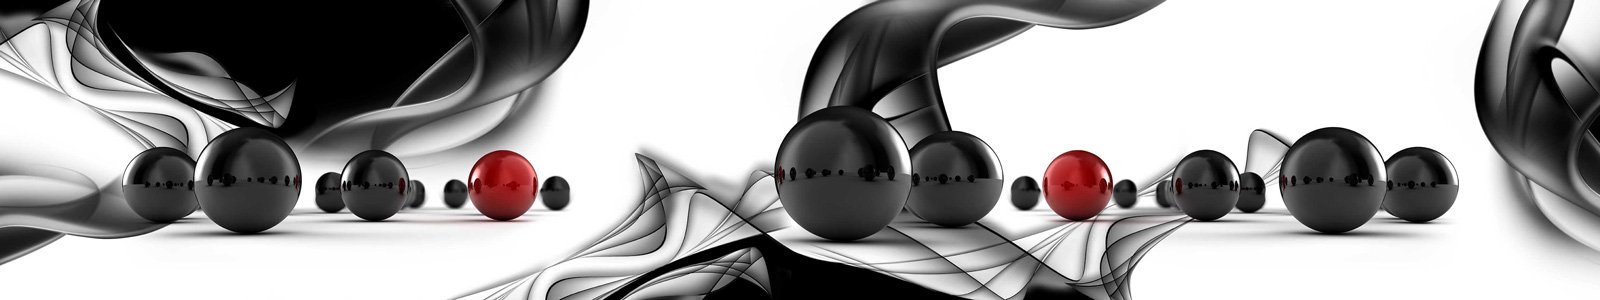 №7313 - Блестящие черные шары на абстрактном фоне